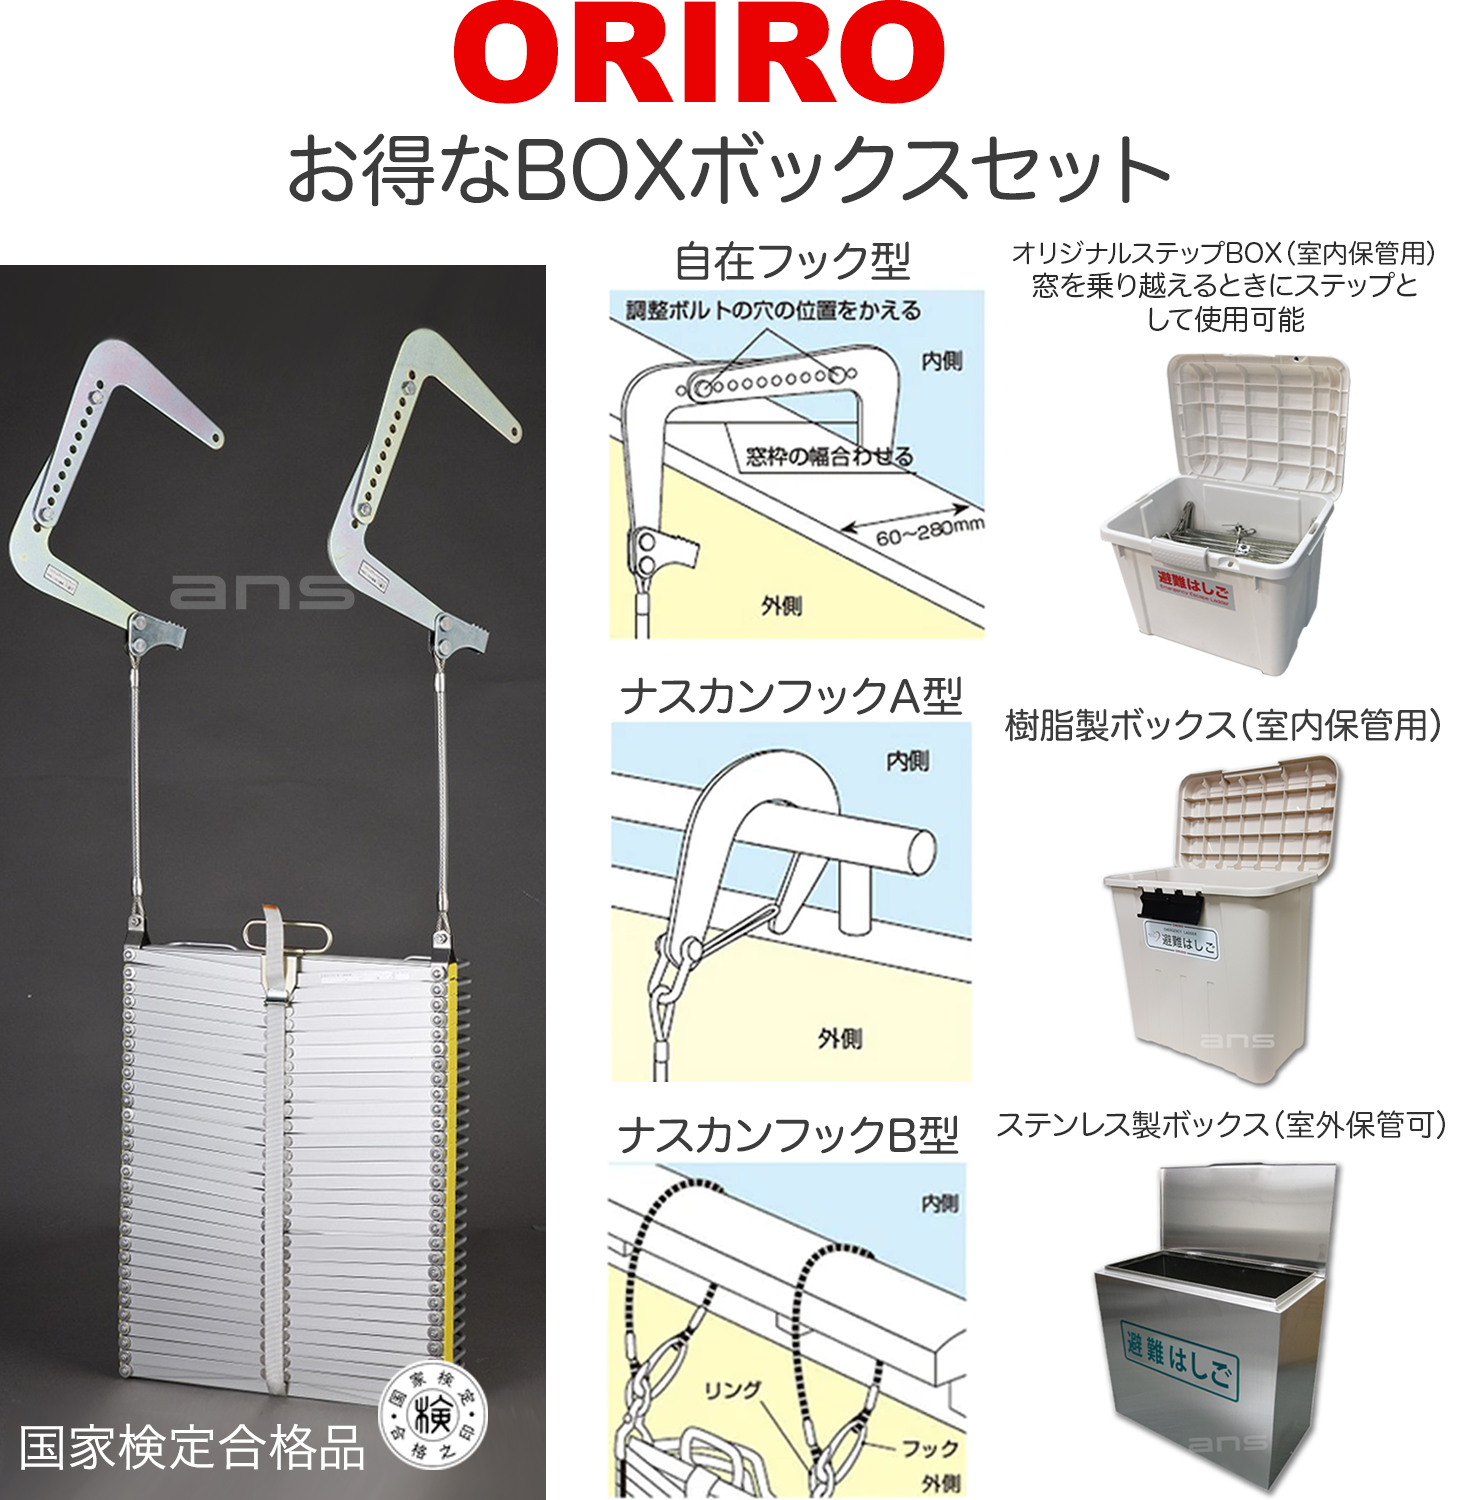 お得なボックスセット。ORIROアルミ製避難はしご 4型 + 収納ボックス。国家検定合格品。設置可能範囲の高さ：自在フック4